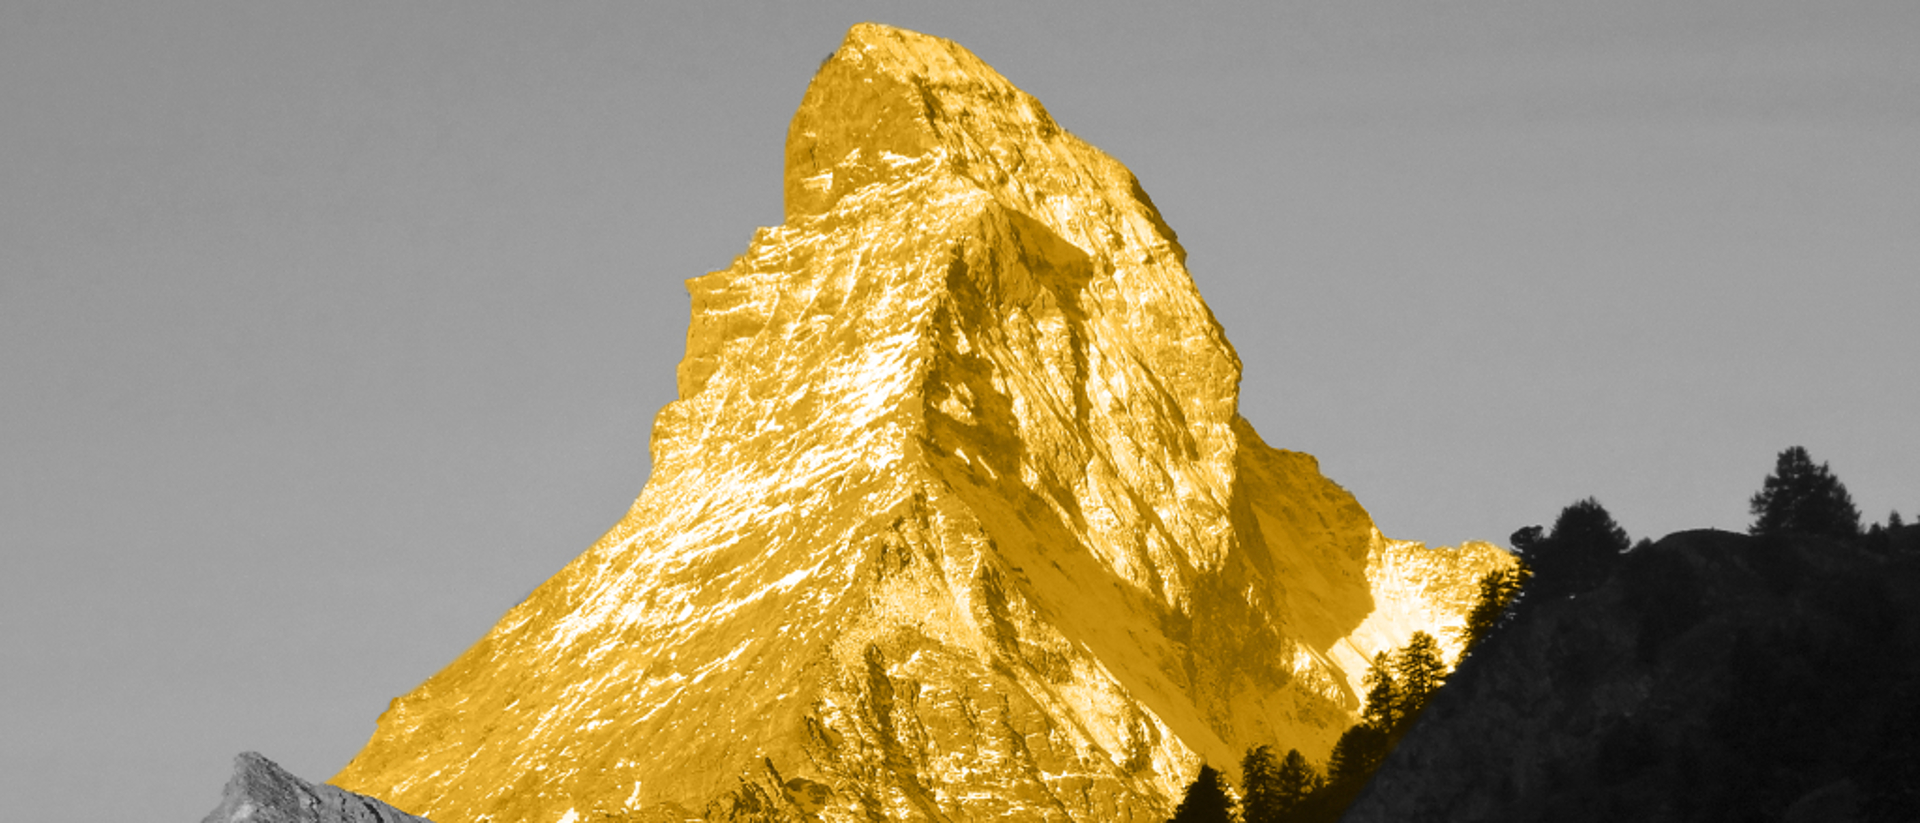 Goldenes Matterhorn. Werbebild der Matterhorn Asset Management AG